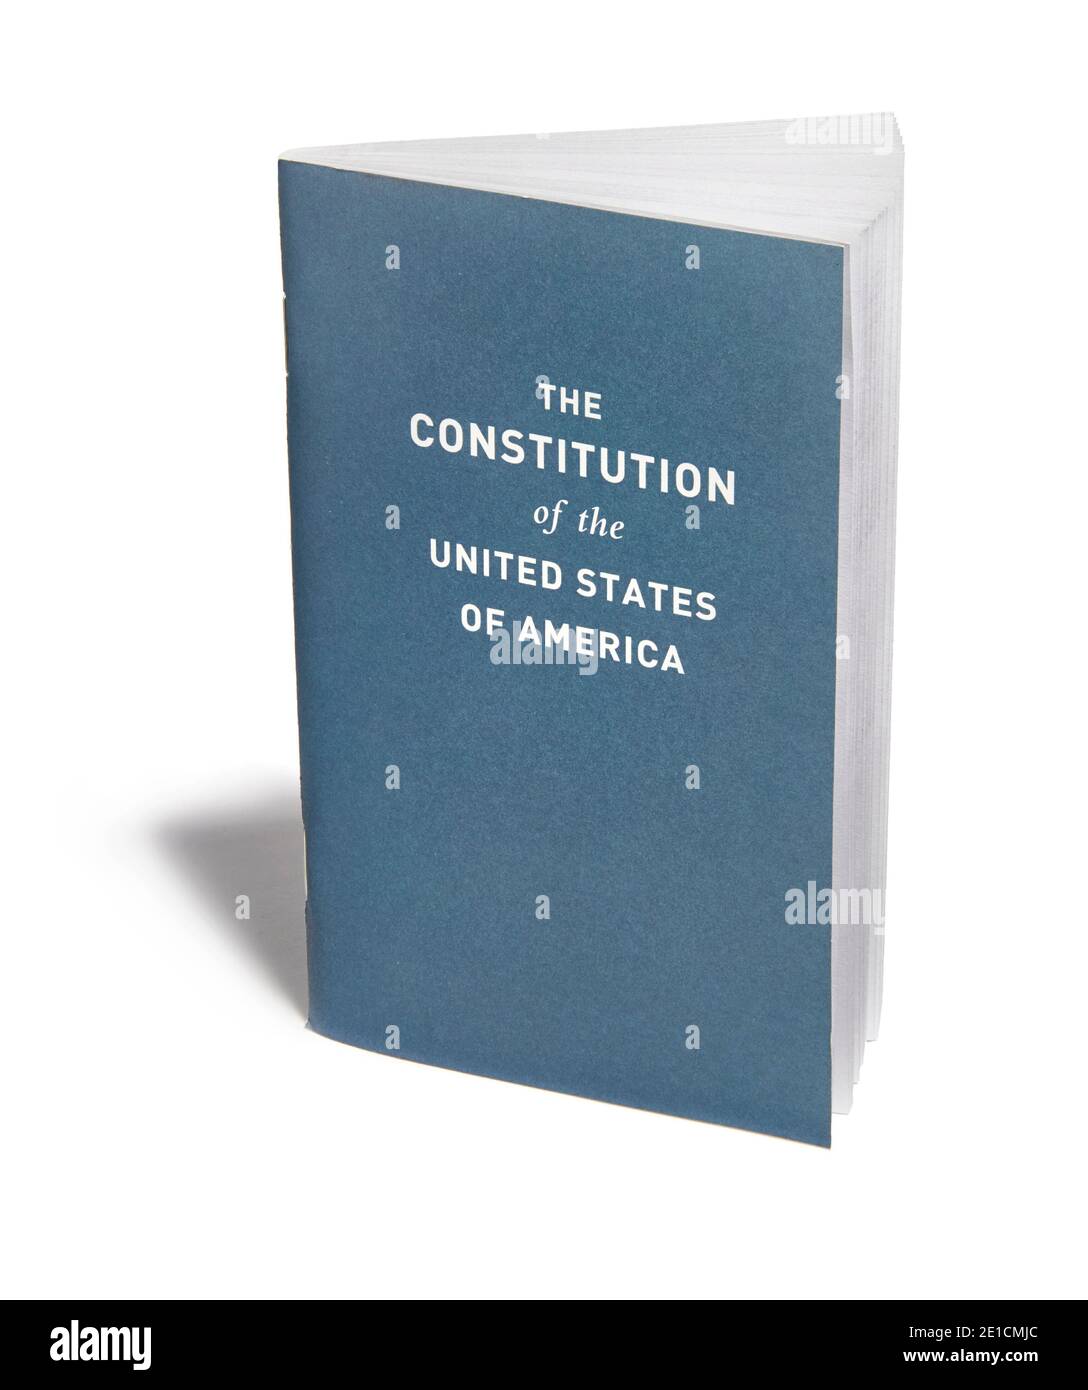 ACLU US-Verfassung Büchlein stehend auf einem weißen fotografiert Hintergrund Stockfoto